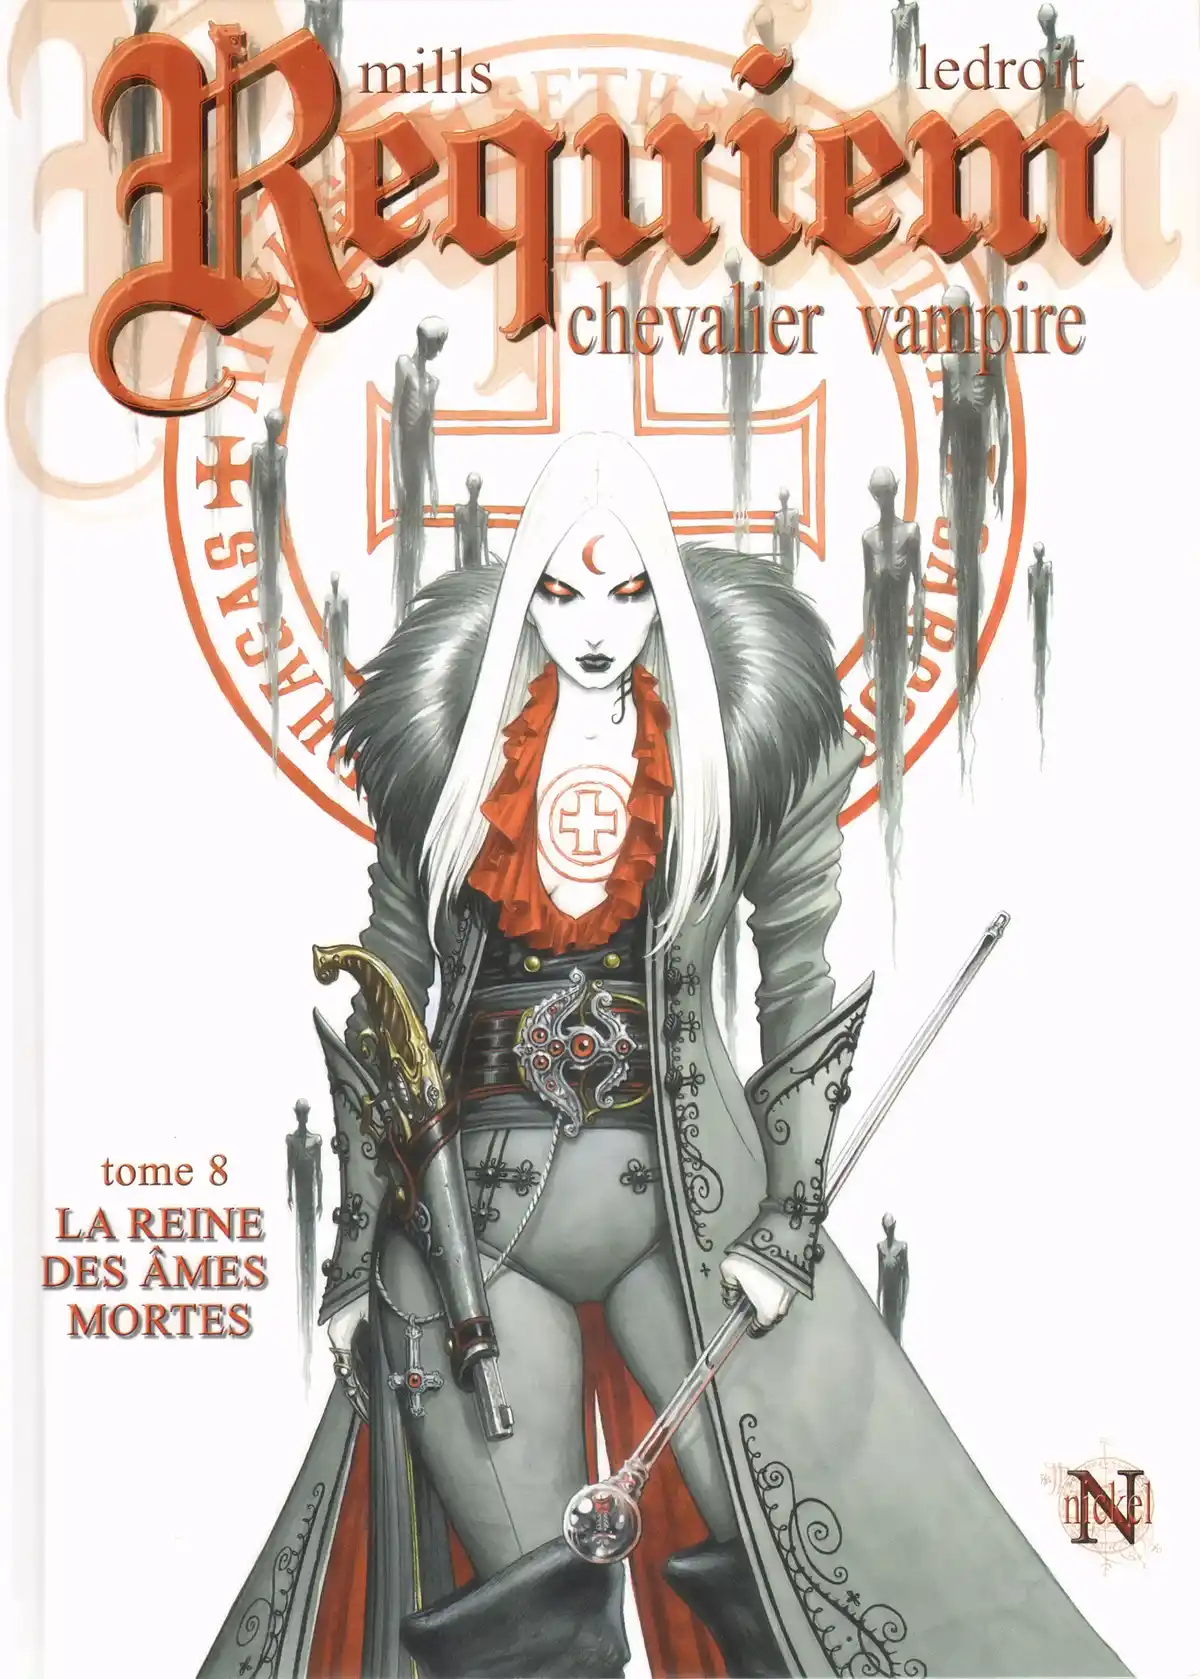 Requiem Chevalier Vampire Volume 8 page 1